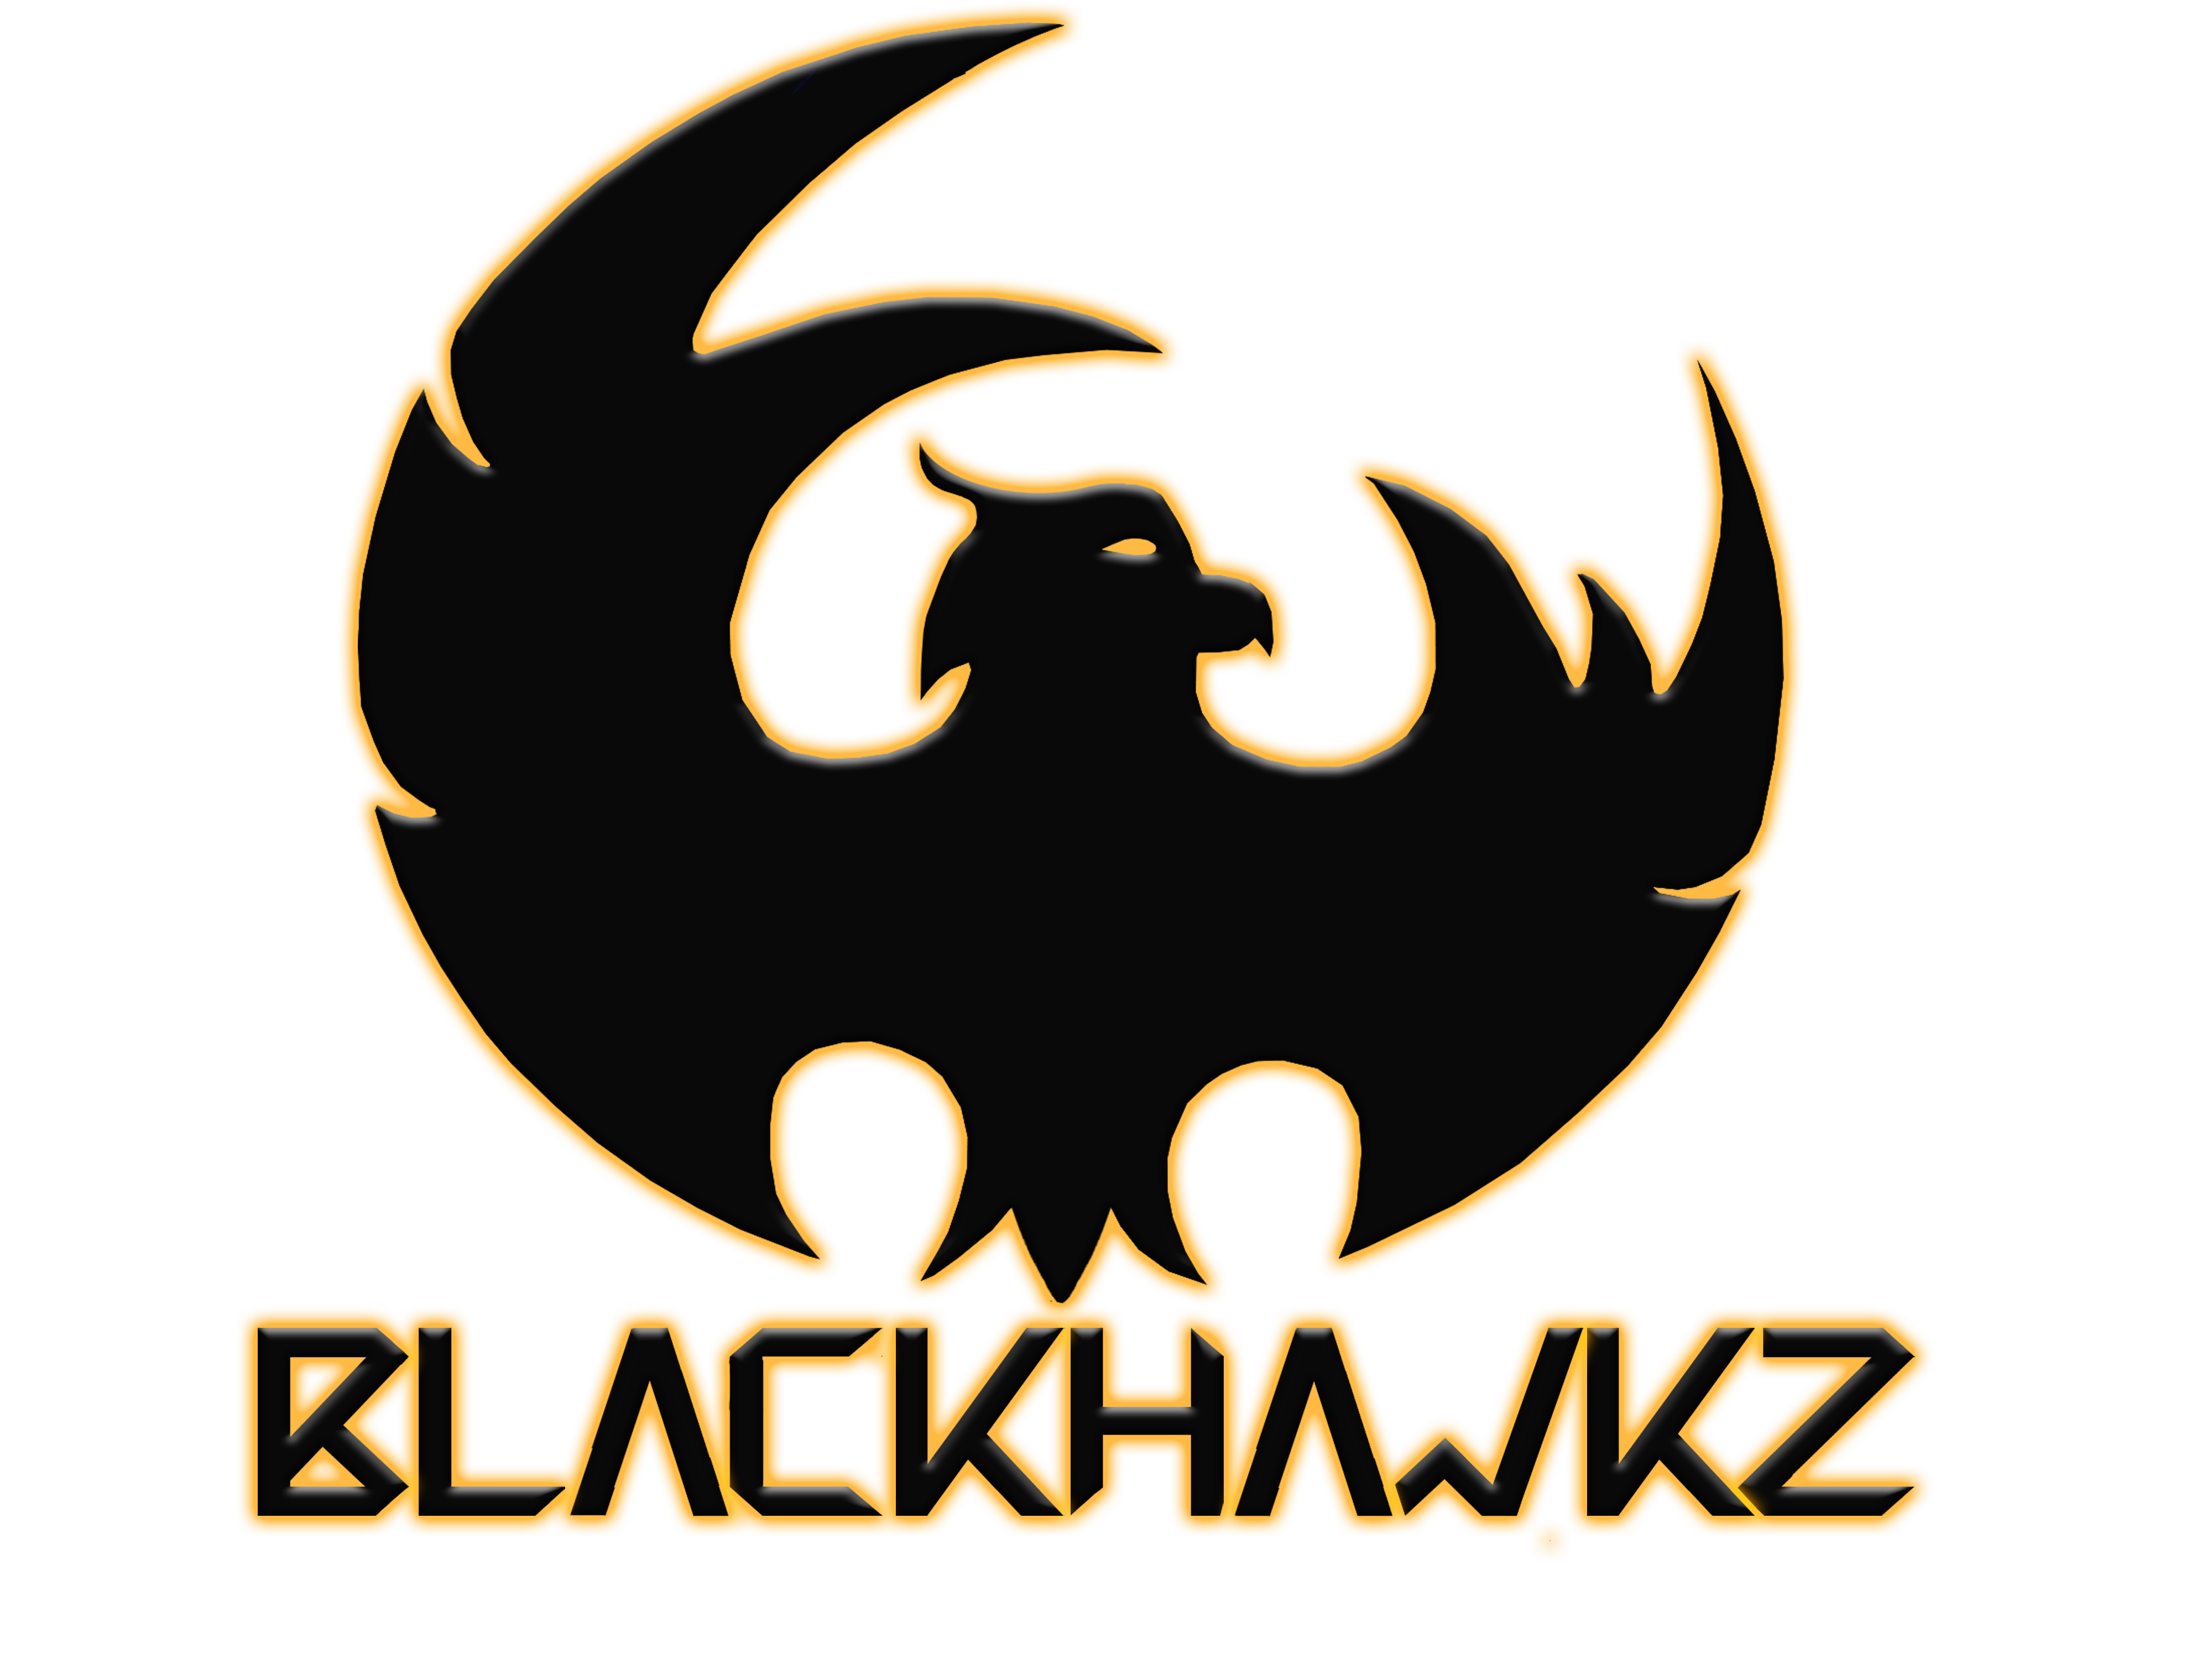 BlackHawkZ